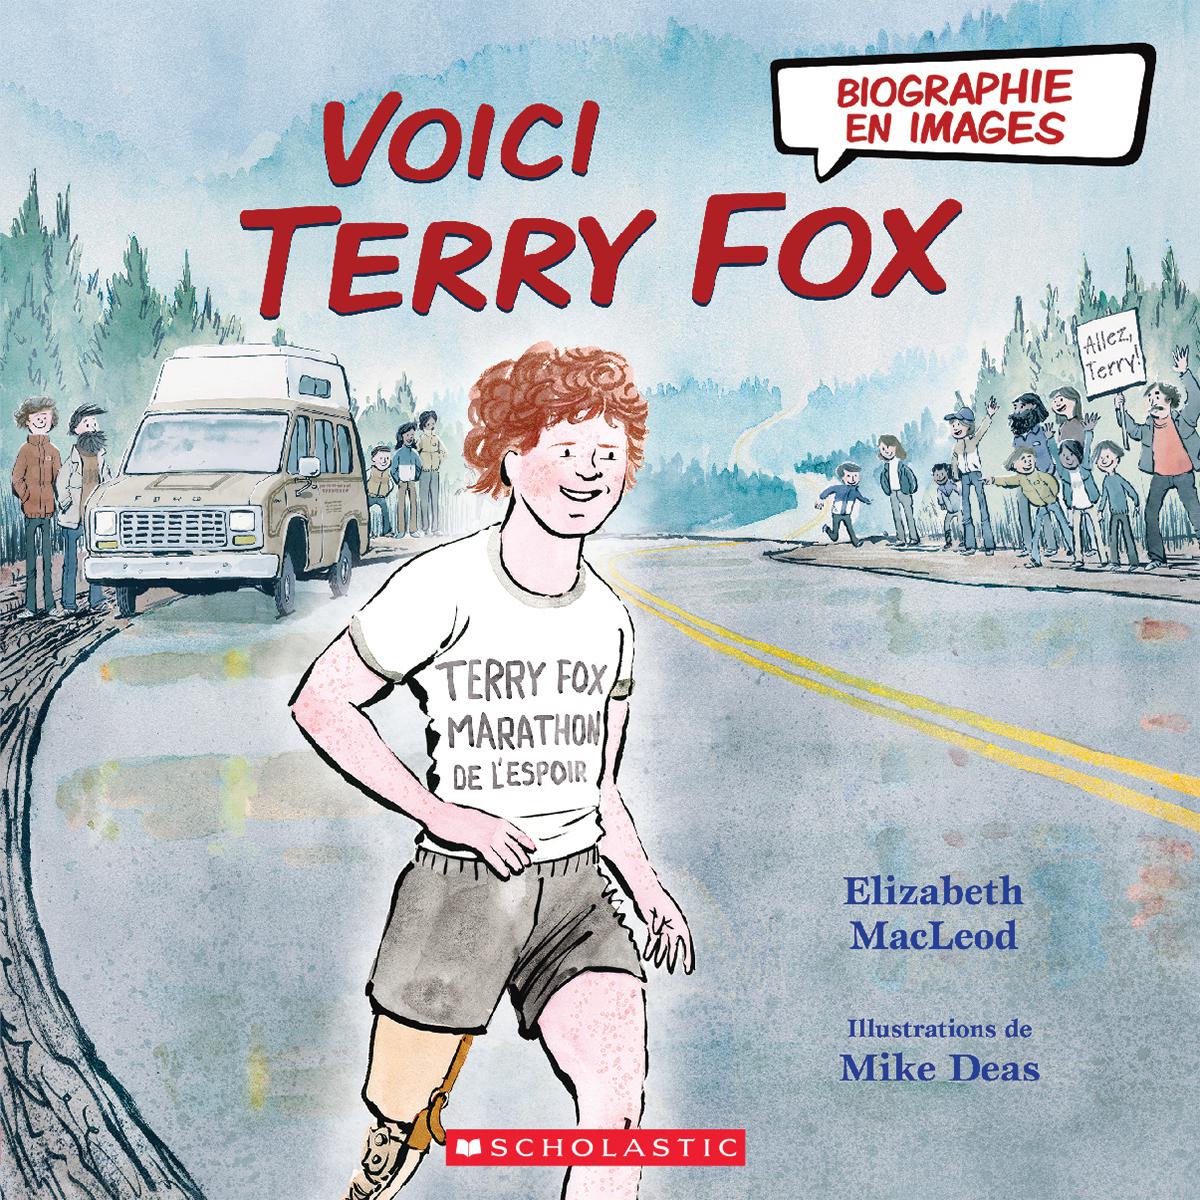  Biographie en images : Voici Terry Fox 